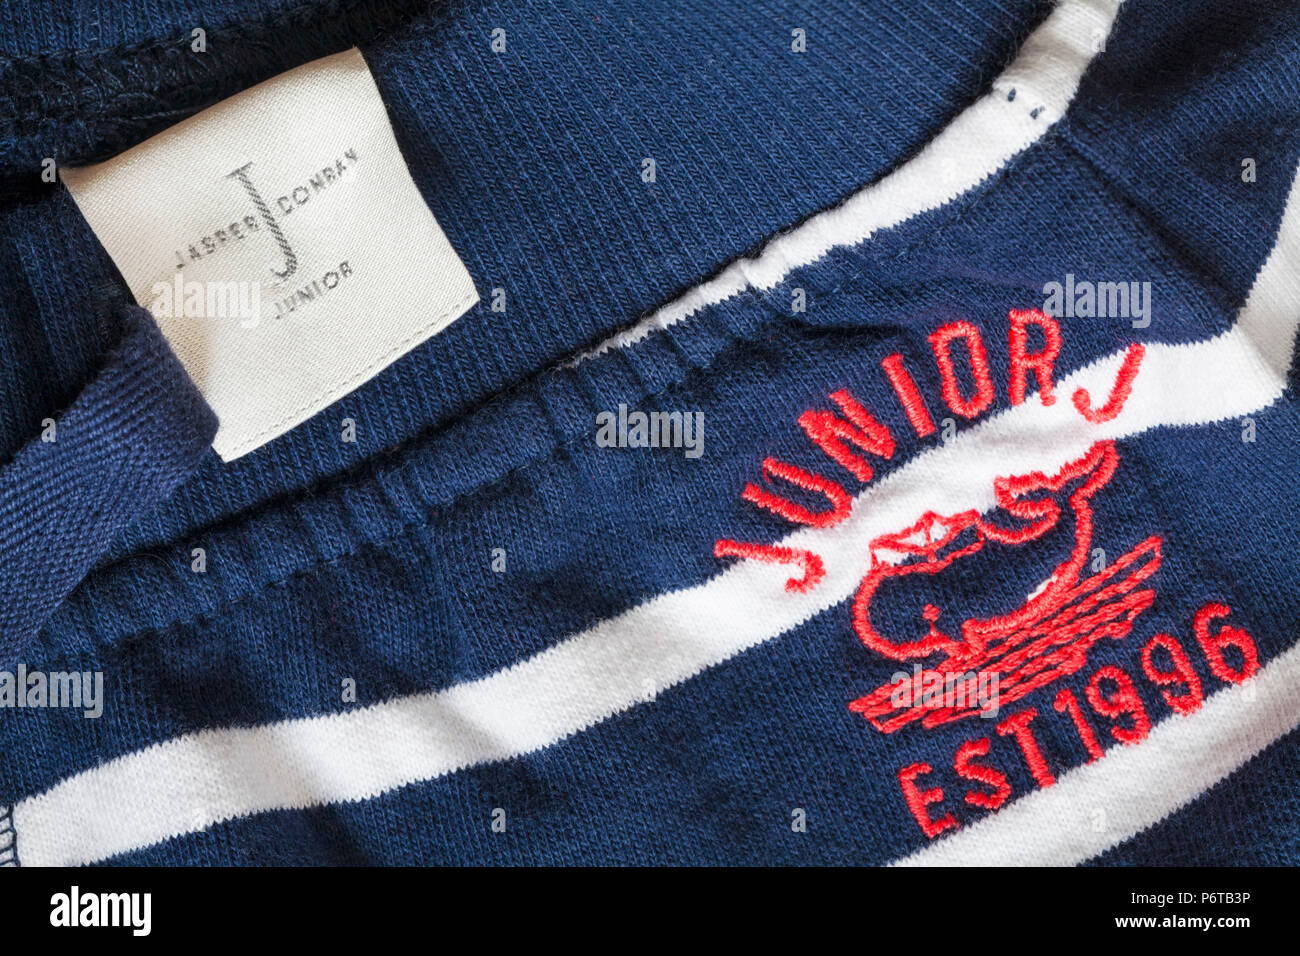 Jasper Conran Junior J Label in der Kleidung Stockfotografie - Alamy